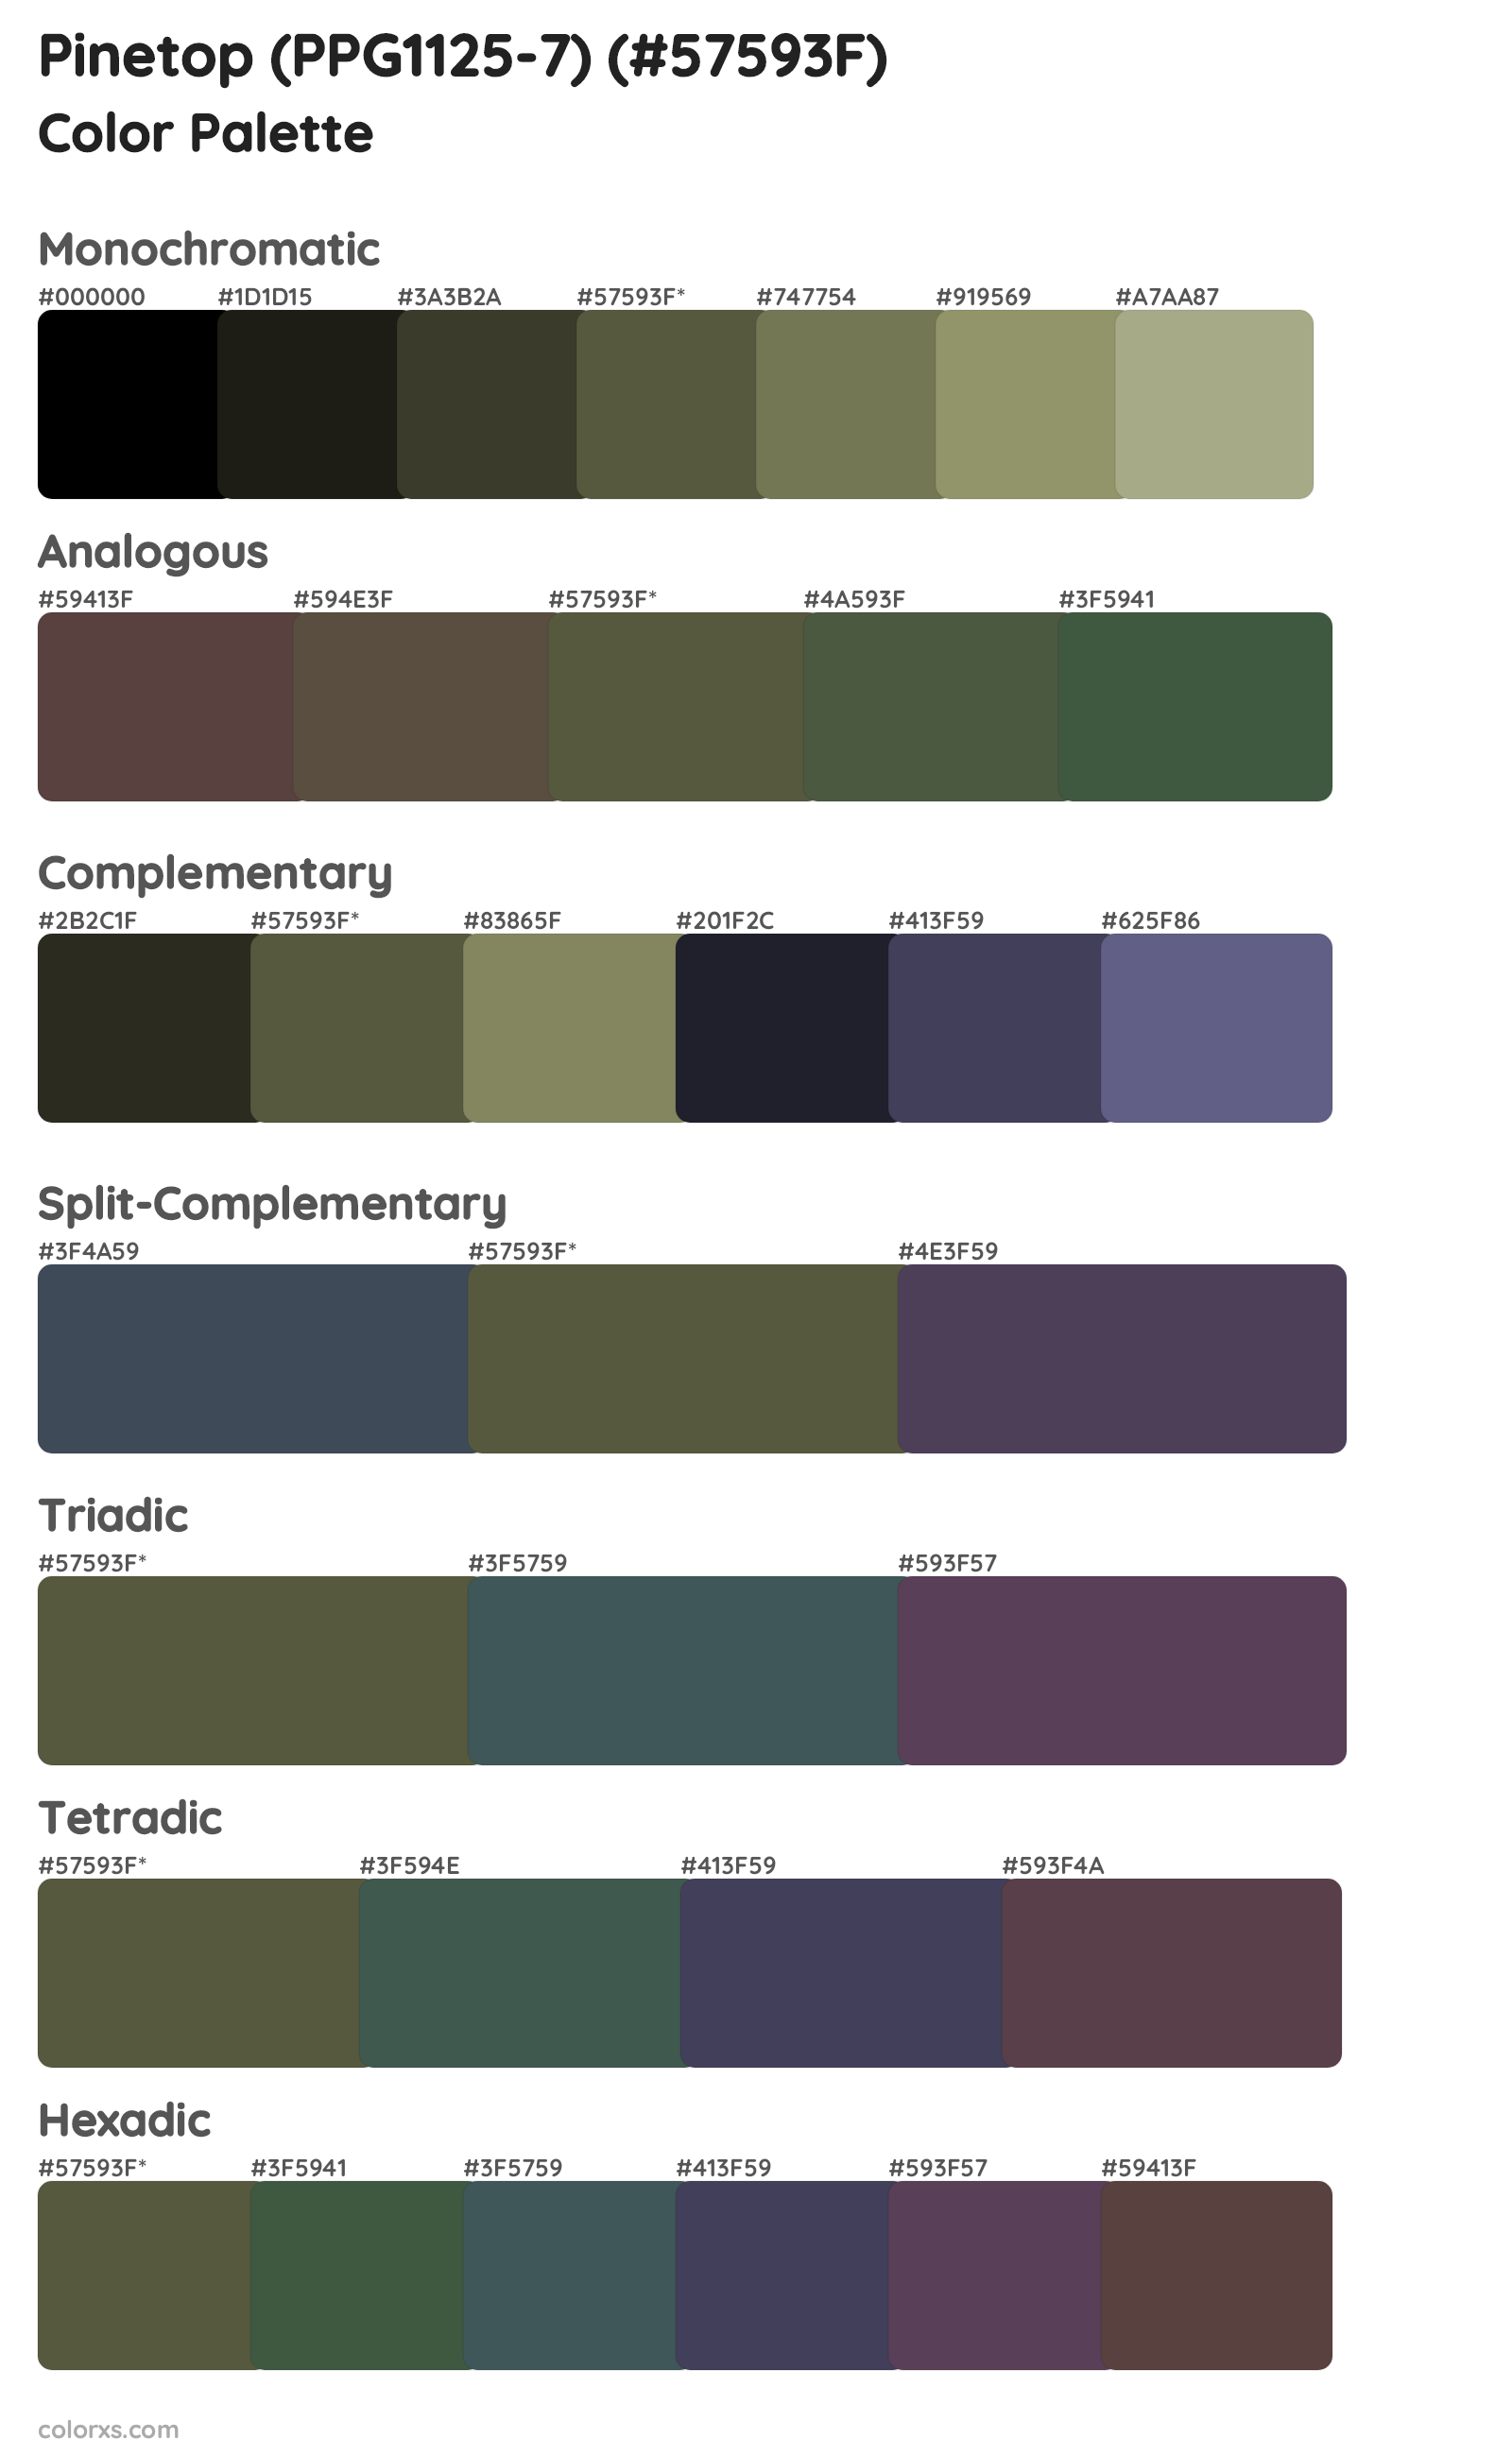 Pinetop (PPG1125-7) Color Scheme Palettes